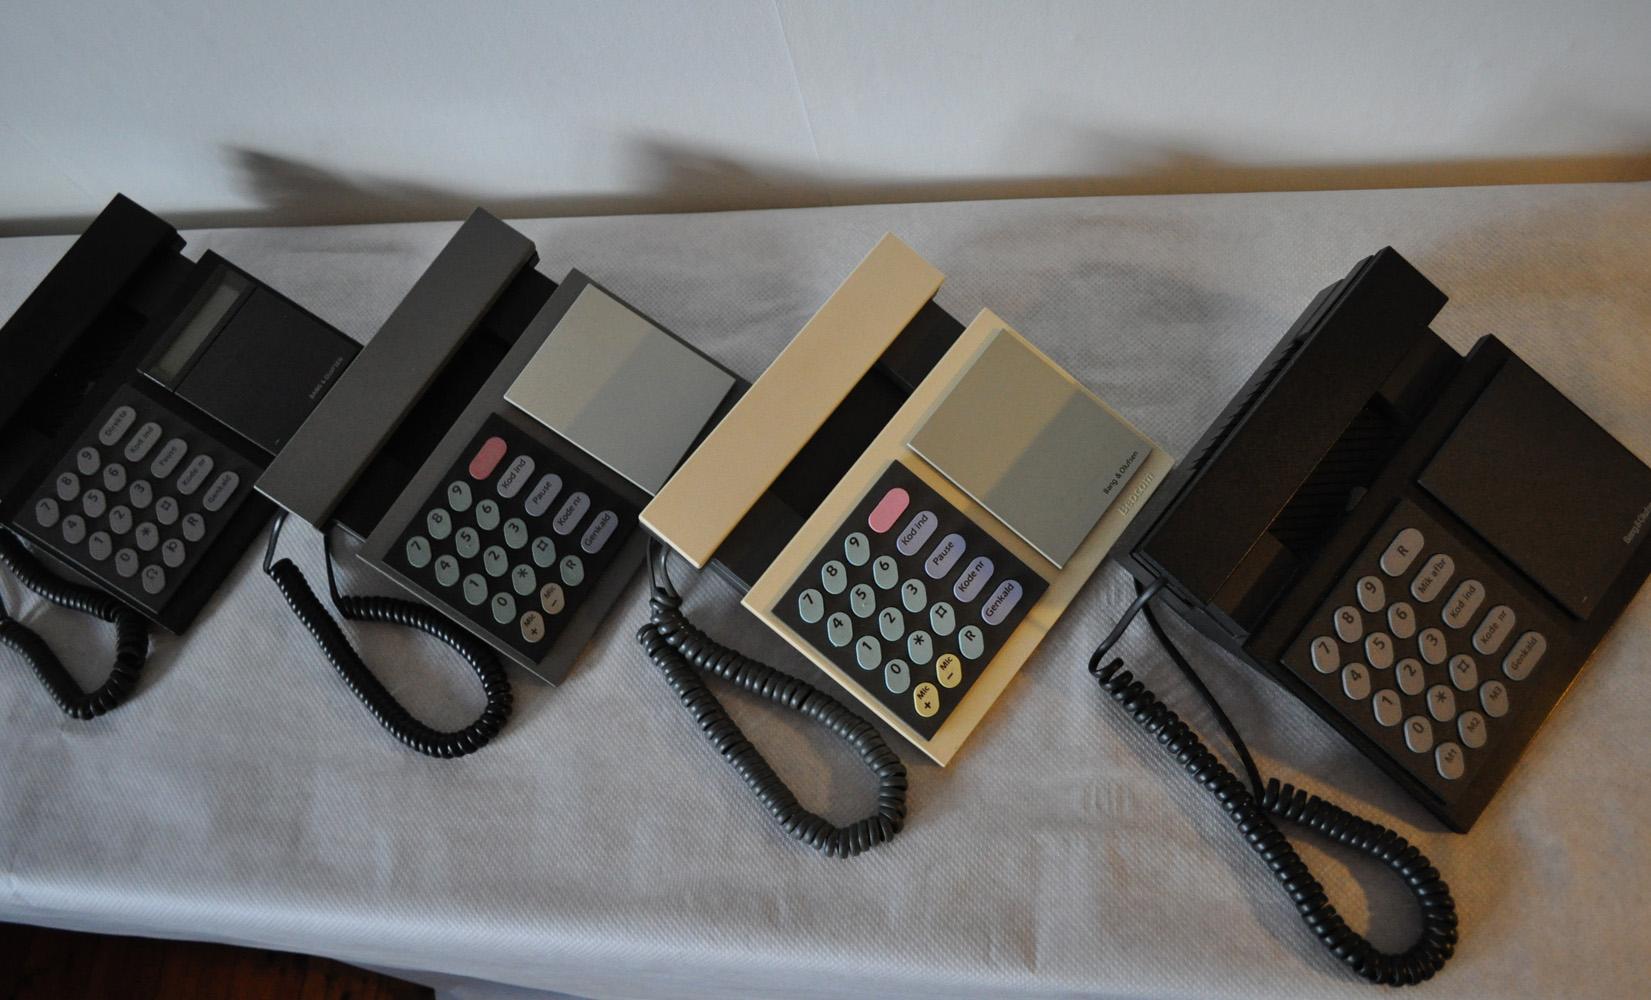 telephone 1986